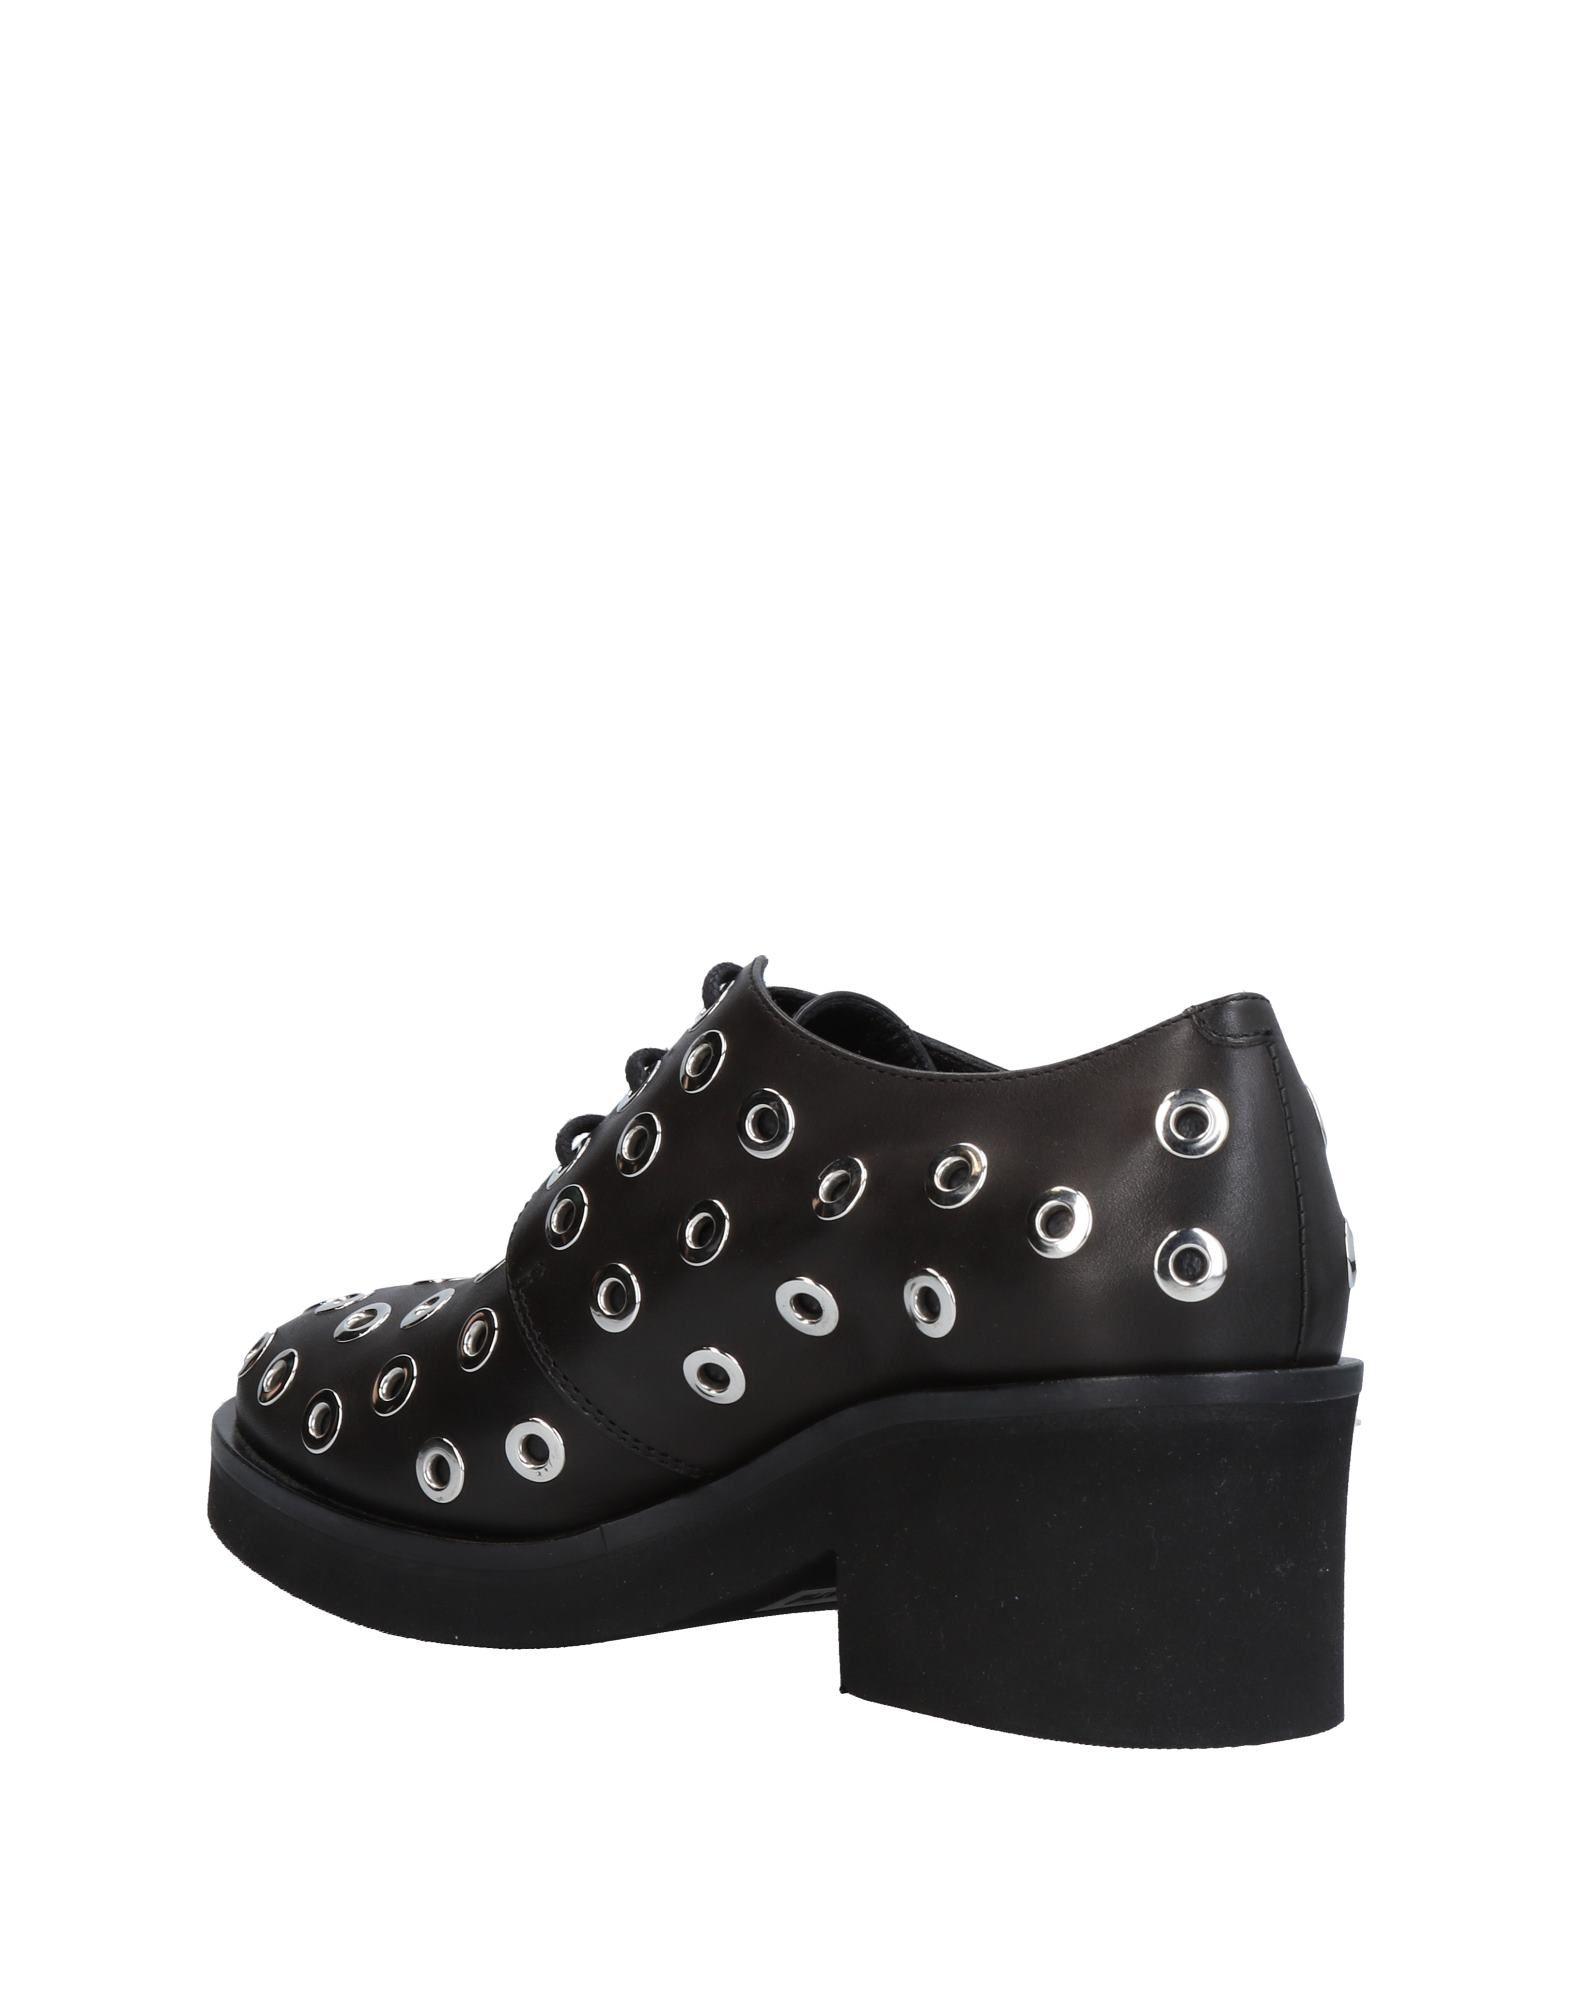 Vic Matié Rubber Lace-up Shoe in Black - Lyst